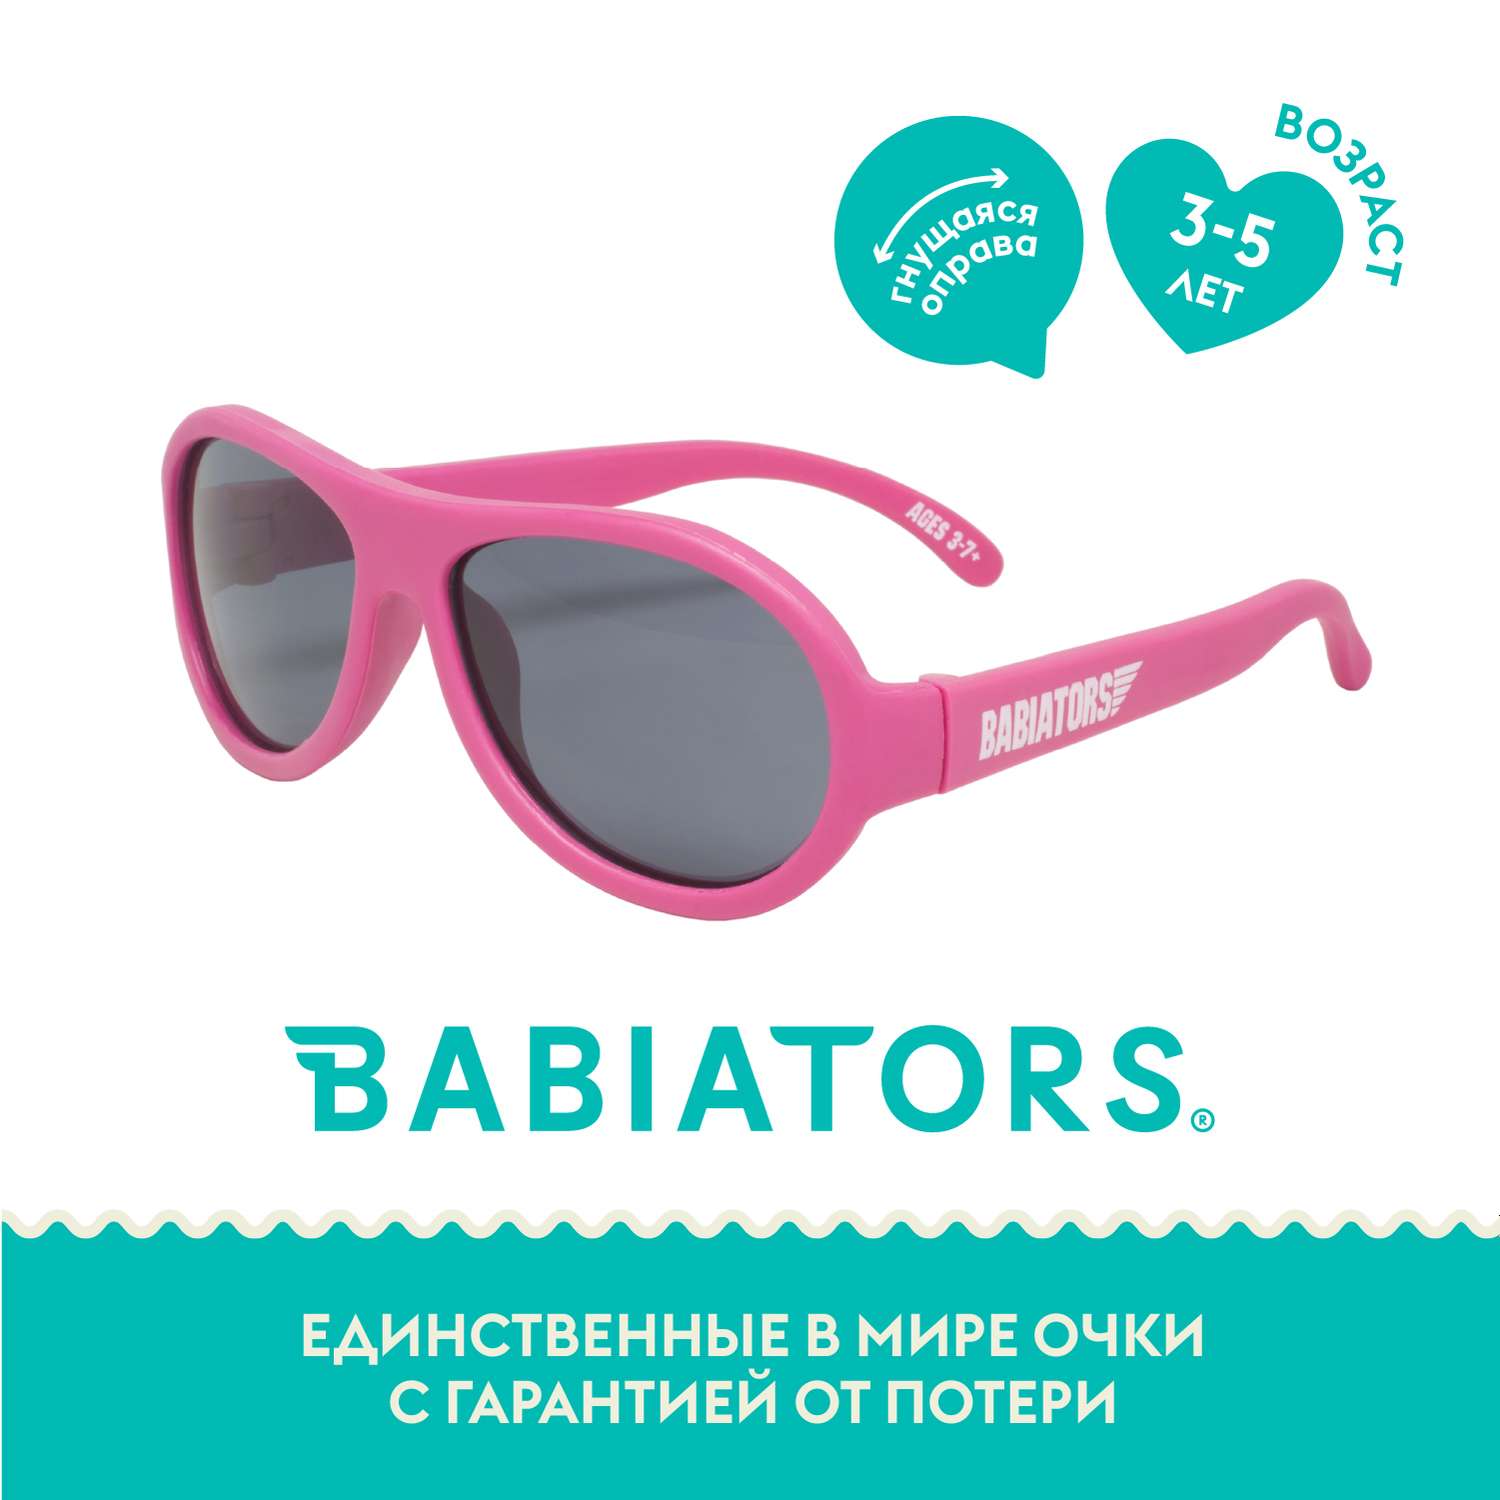 Солнцезащитные очки Babiators Aviator Попсовый розовый 3-5 BAB-047 - фото 2